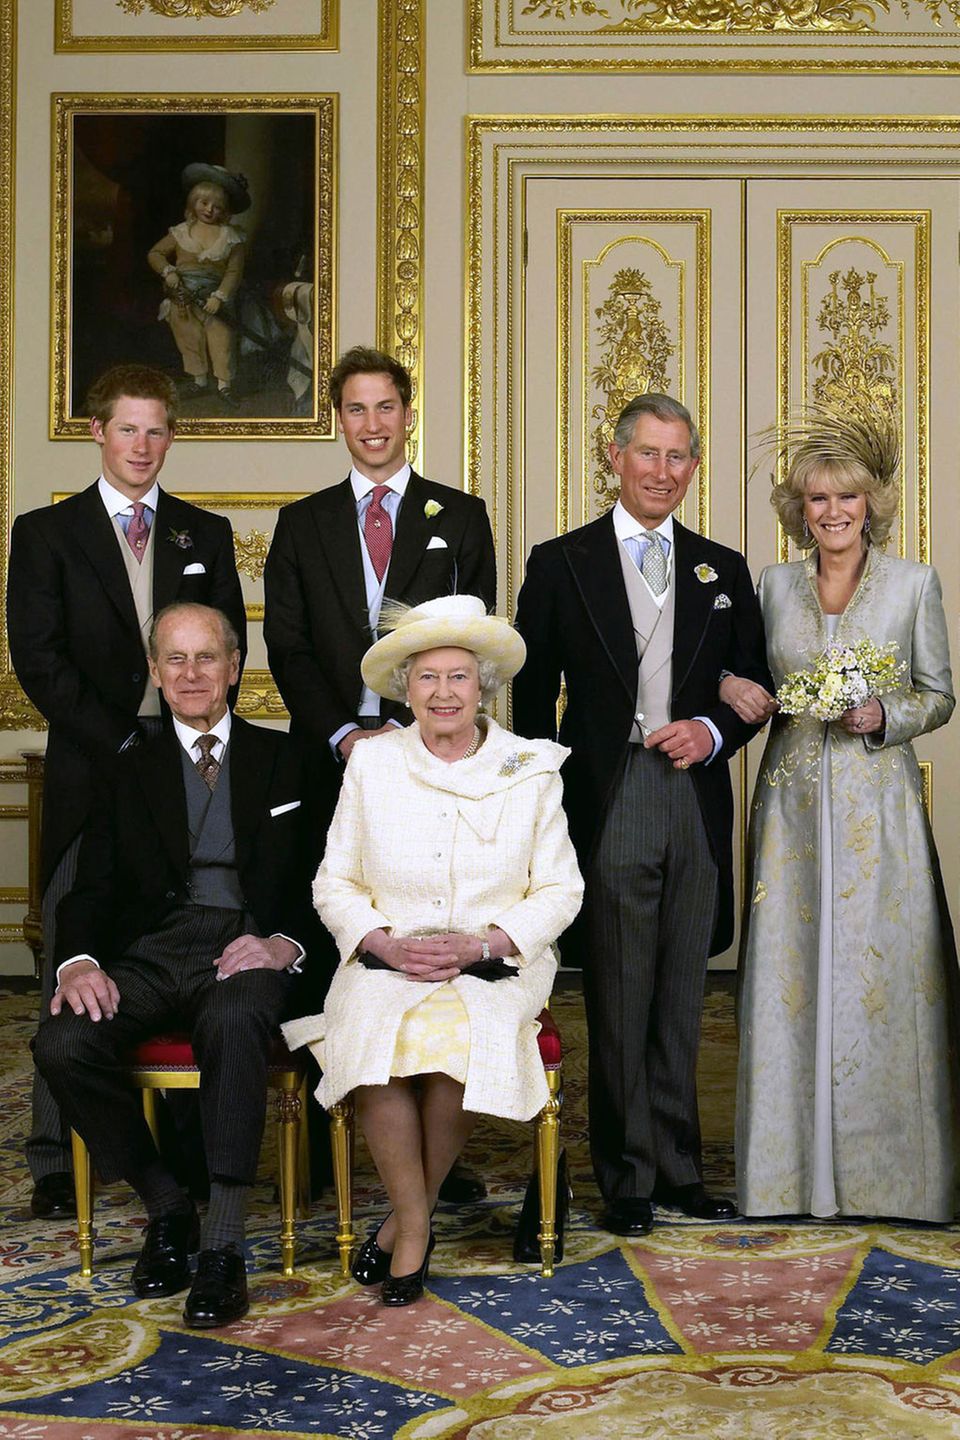 Hochzeitsfoto von Prinz Charles und Herzogin Camilla im Jahr 2005